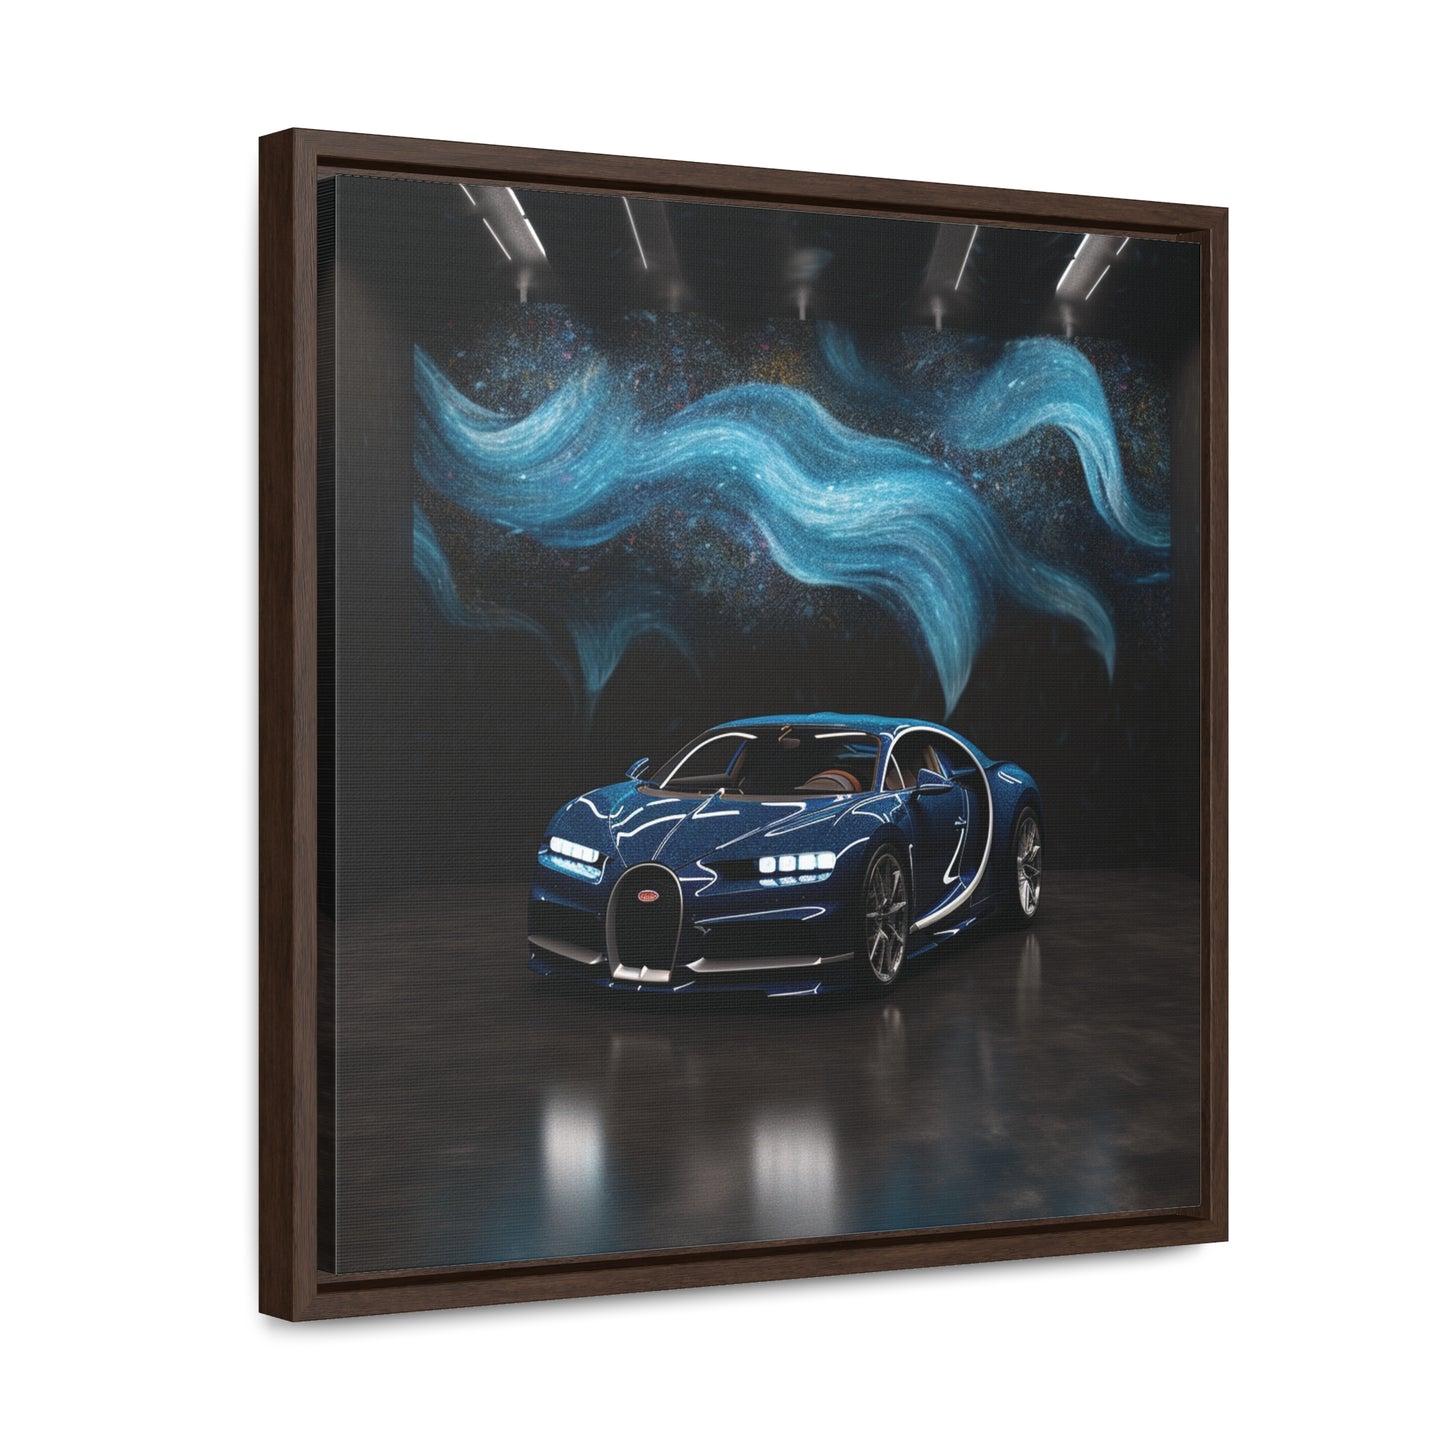 Gallery Canvas Wraps, Square Frame Hyper Bugatti 3